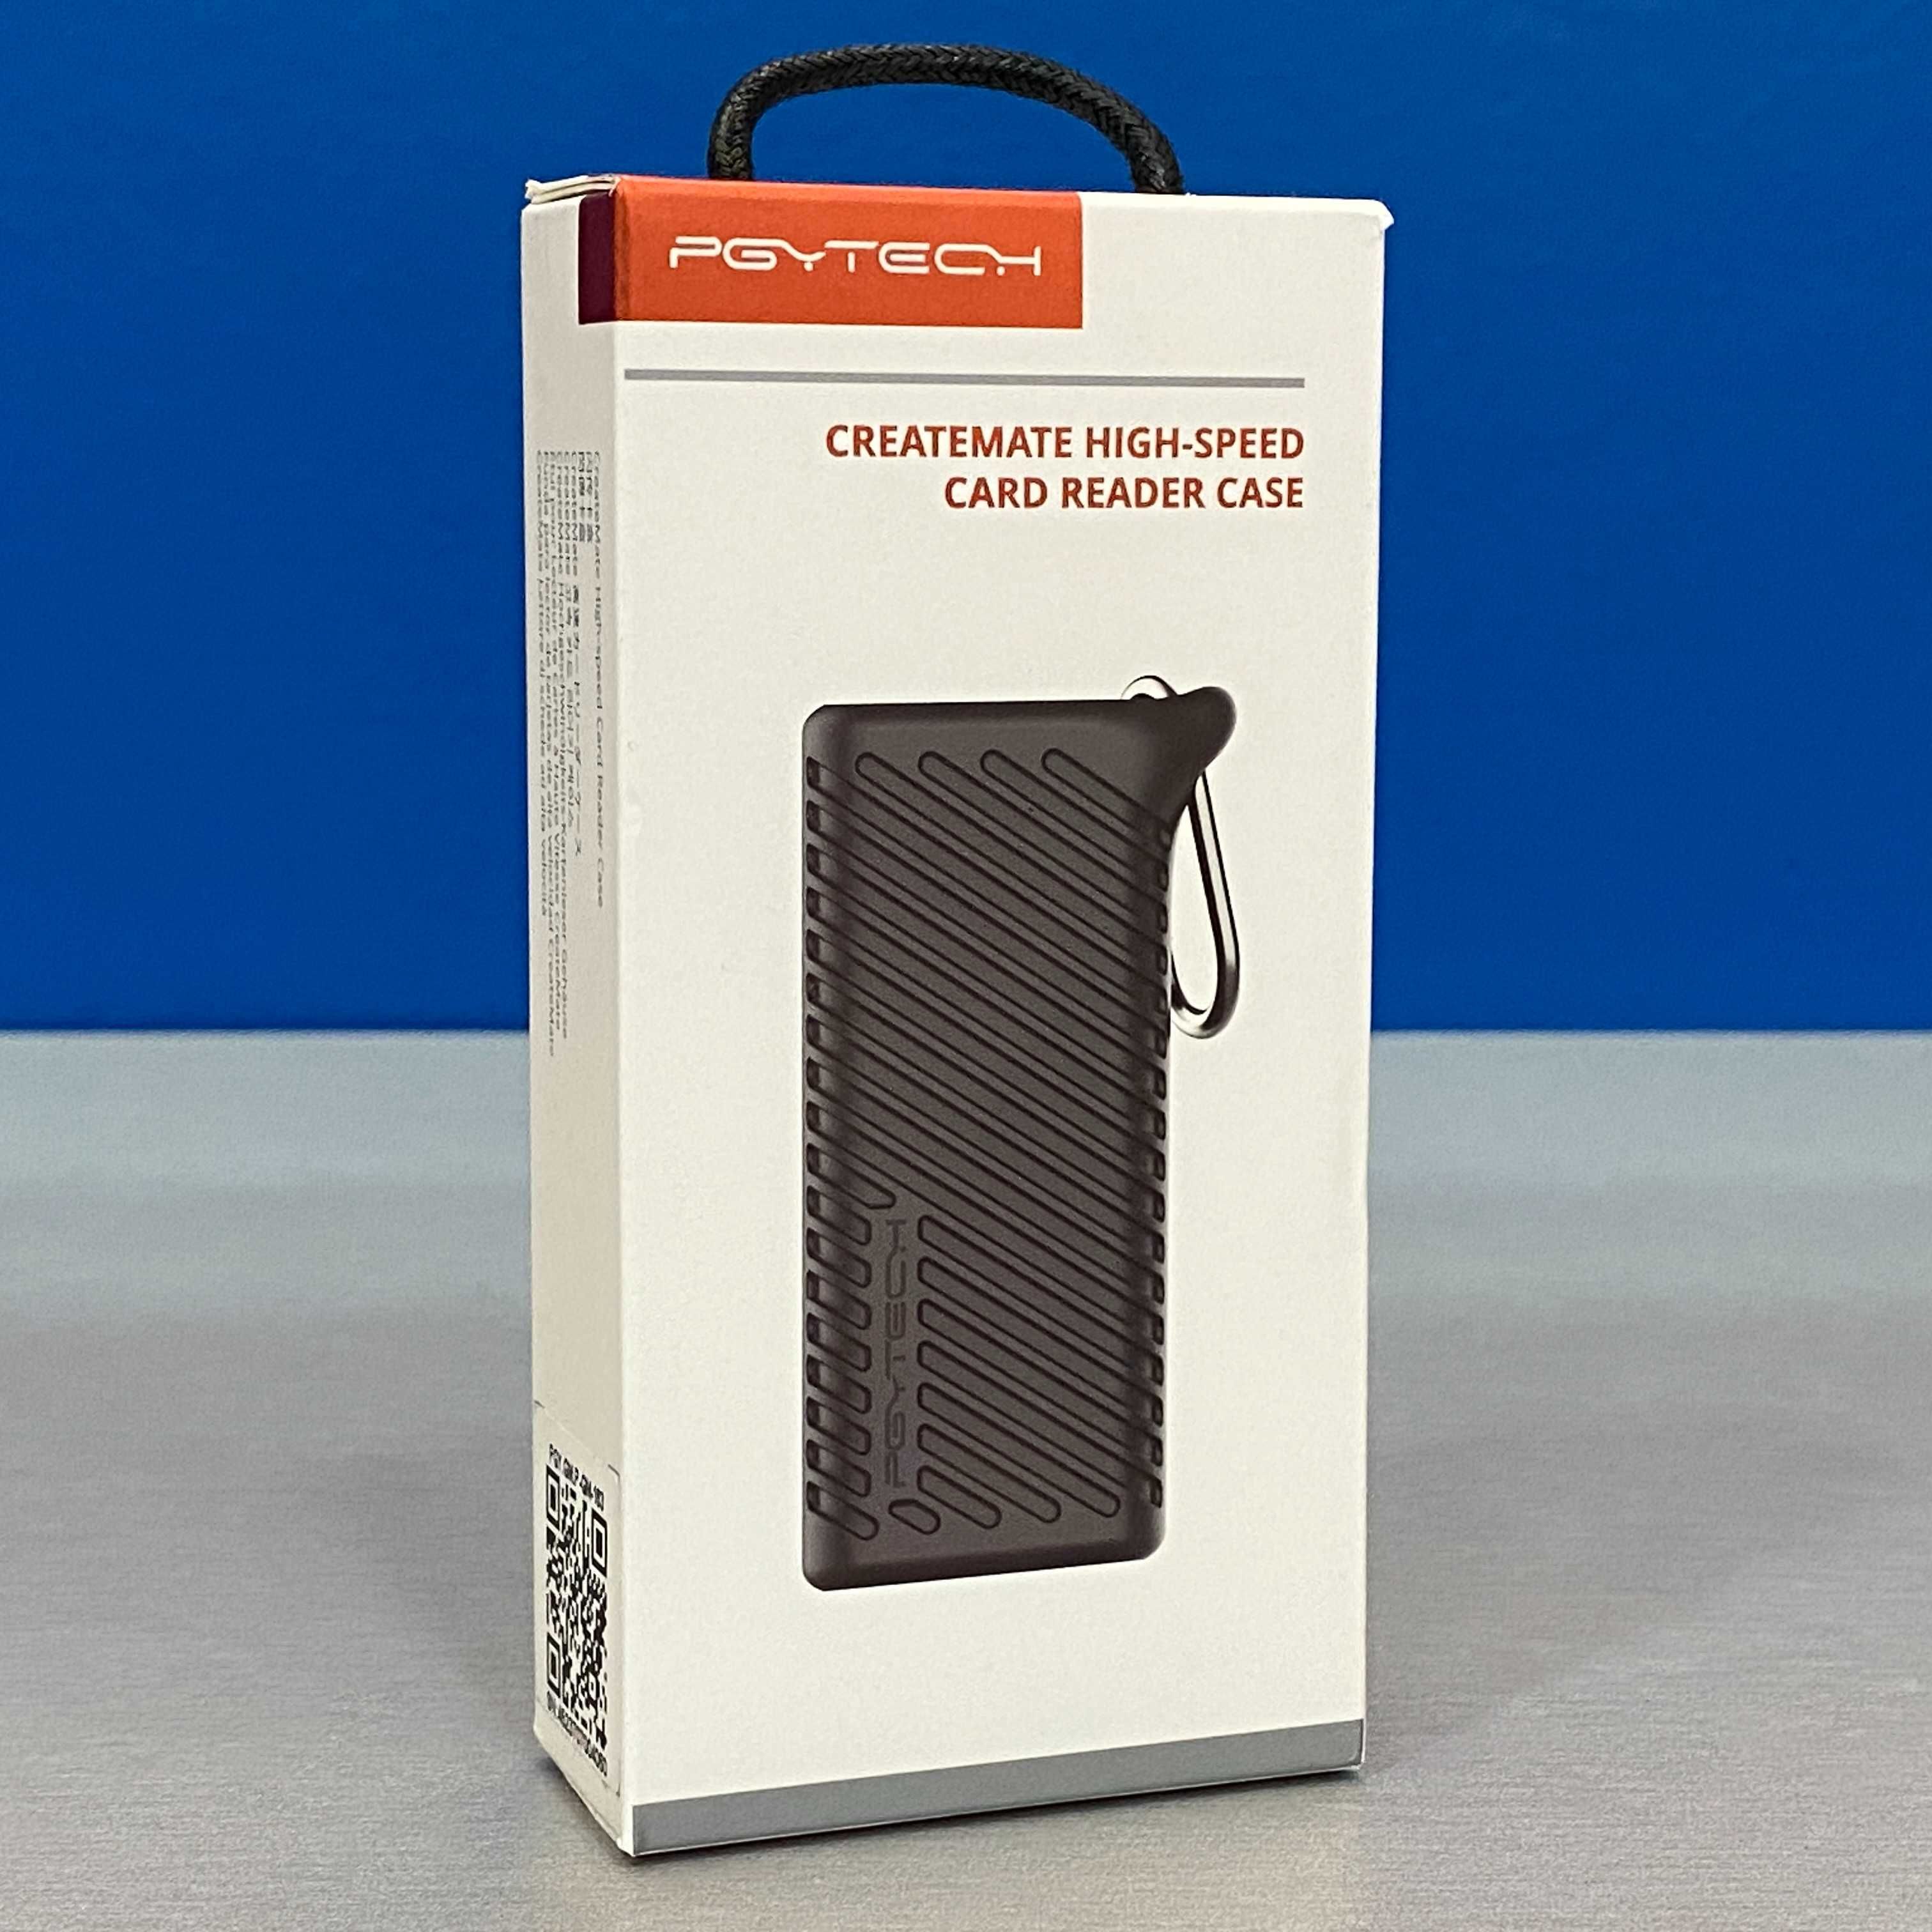 PGYTECH Micro SD/SD High-Speed Card Reader Case (SELADO)